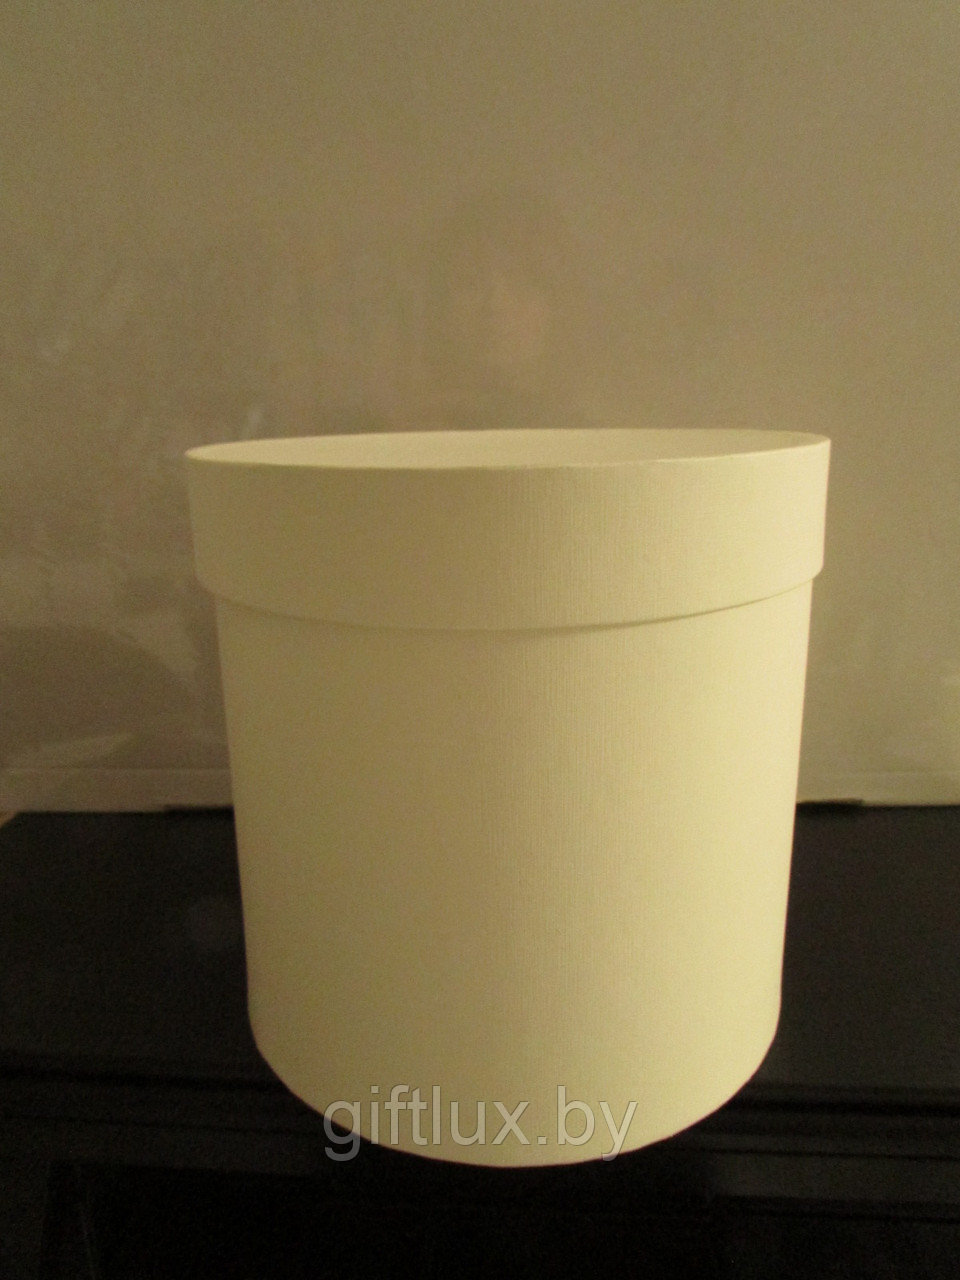 Коробка подарочная круглая "Однотон", 20*20 см (Imitlin) ваниль